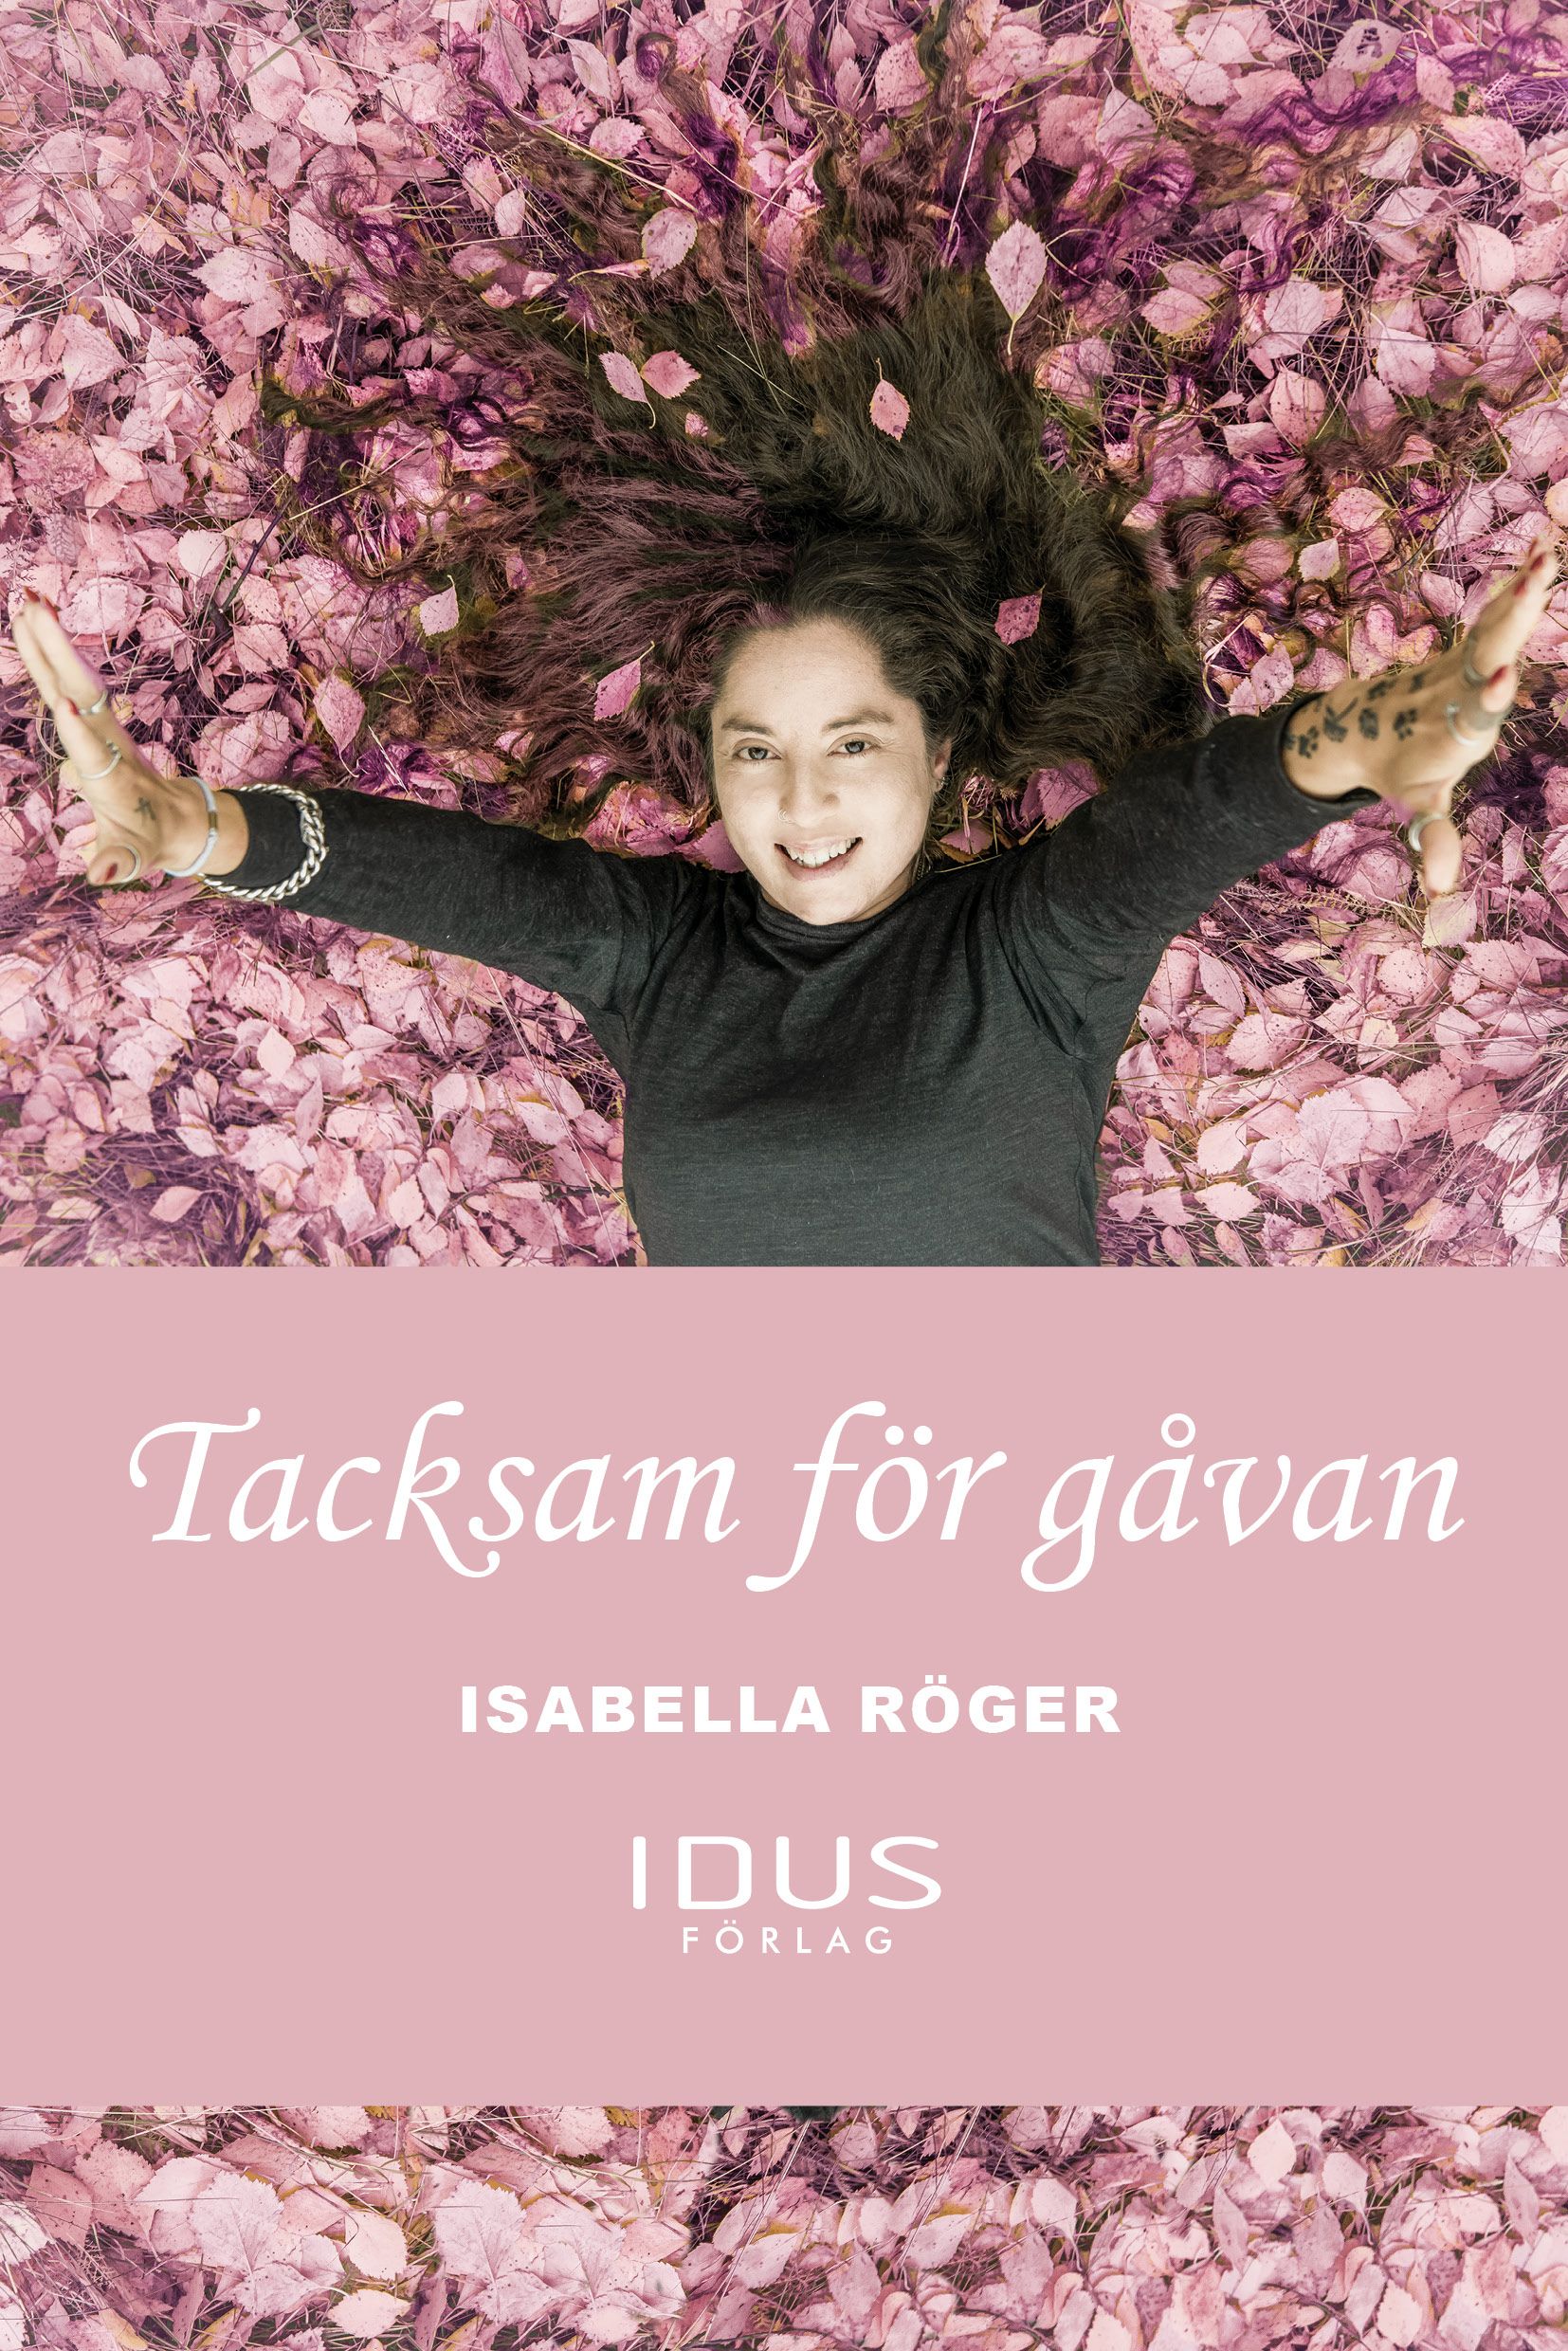 Tacksam för gåvan , e-bok av Mikael Elmegren, Isabella Röger